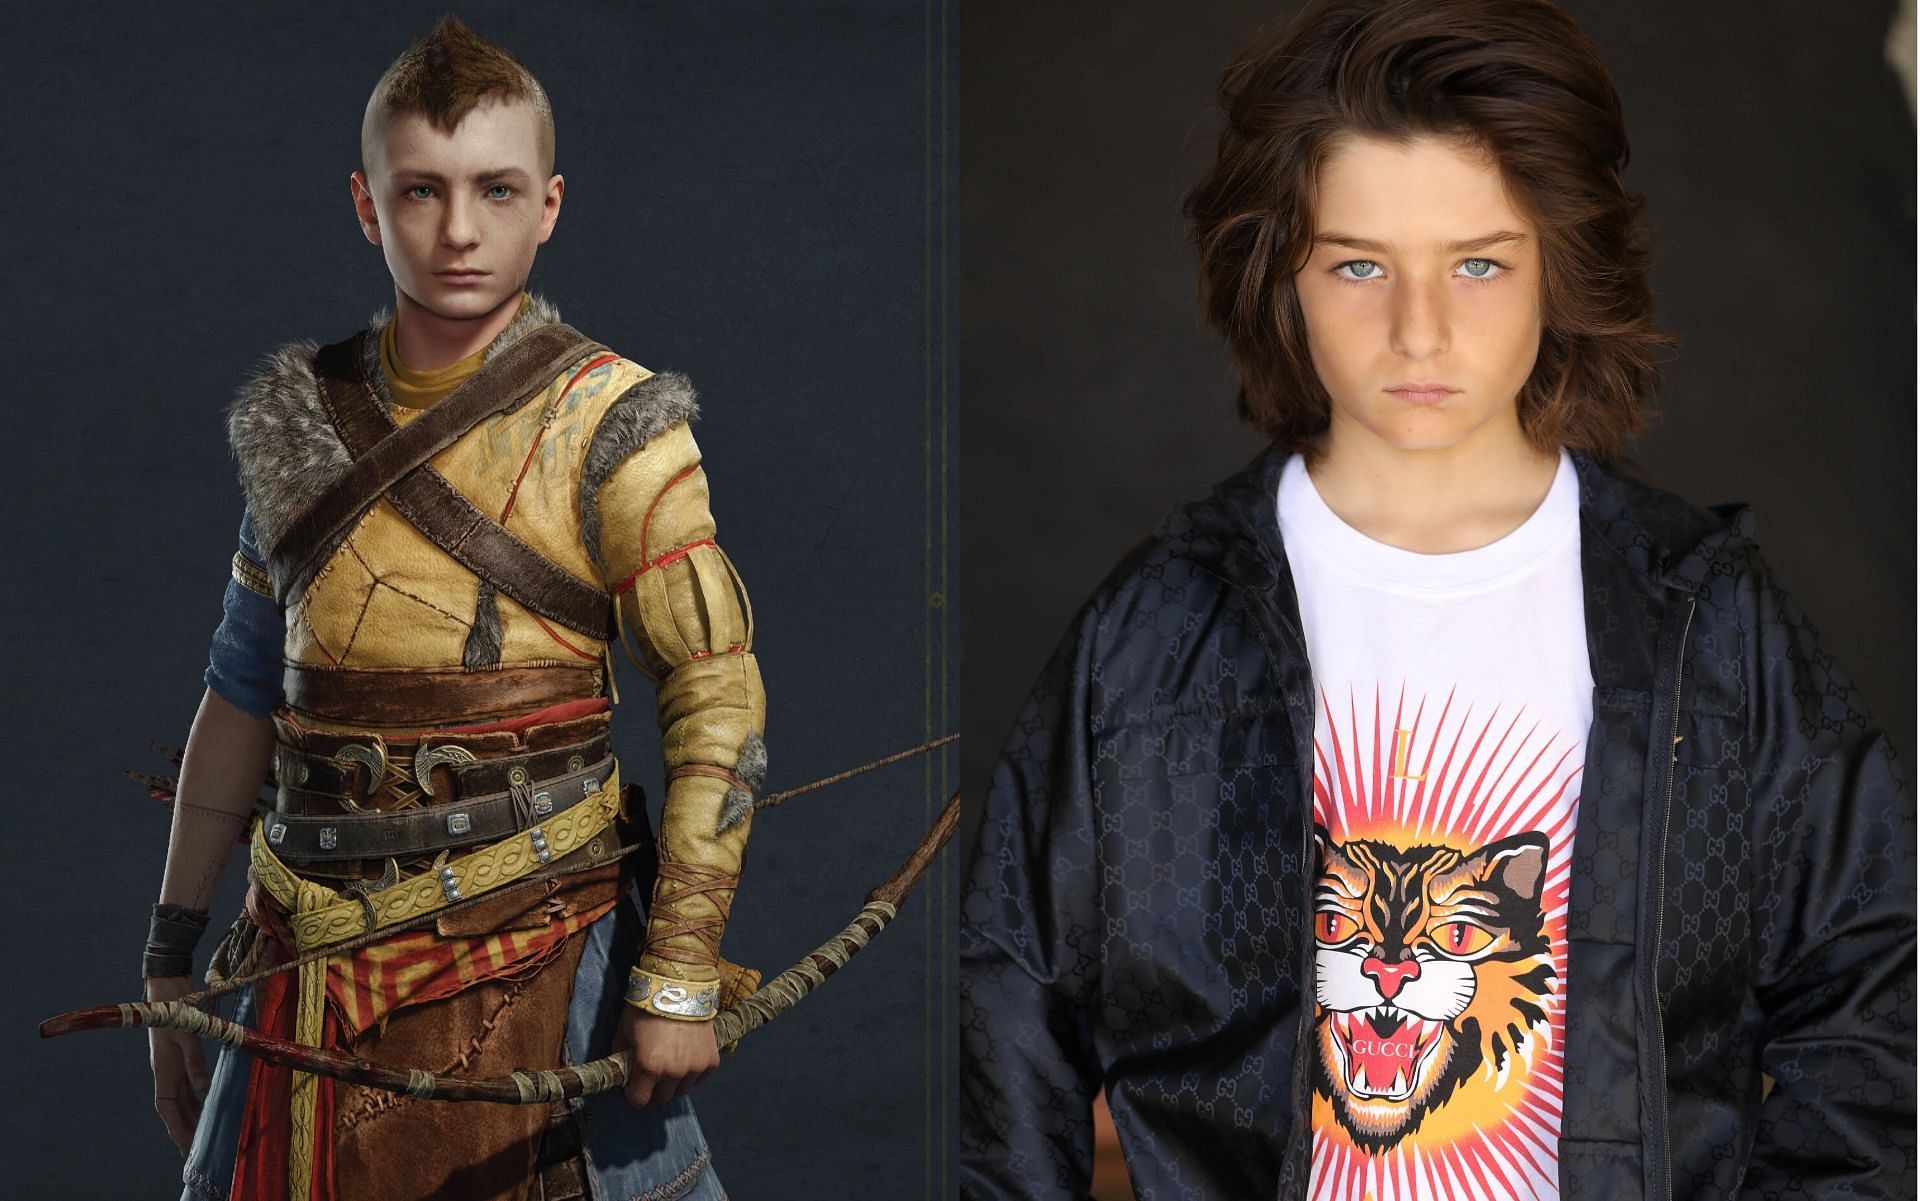 God of War Ragnarök' Voice Actor Teases a Sequel